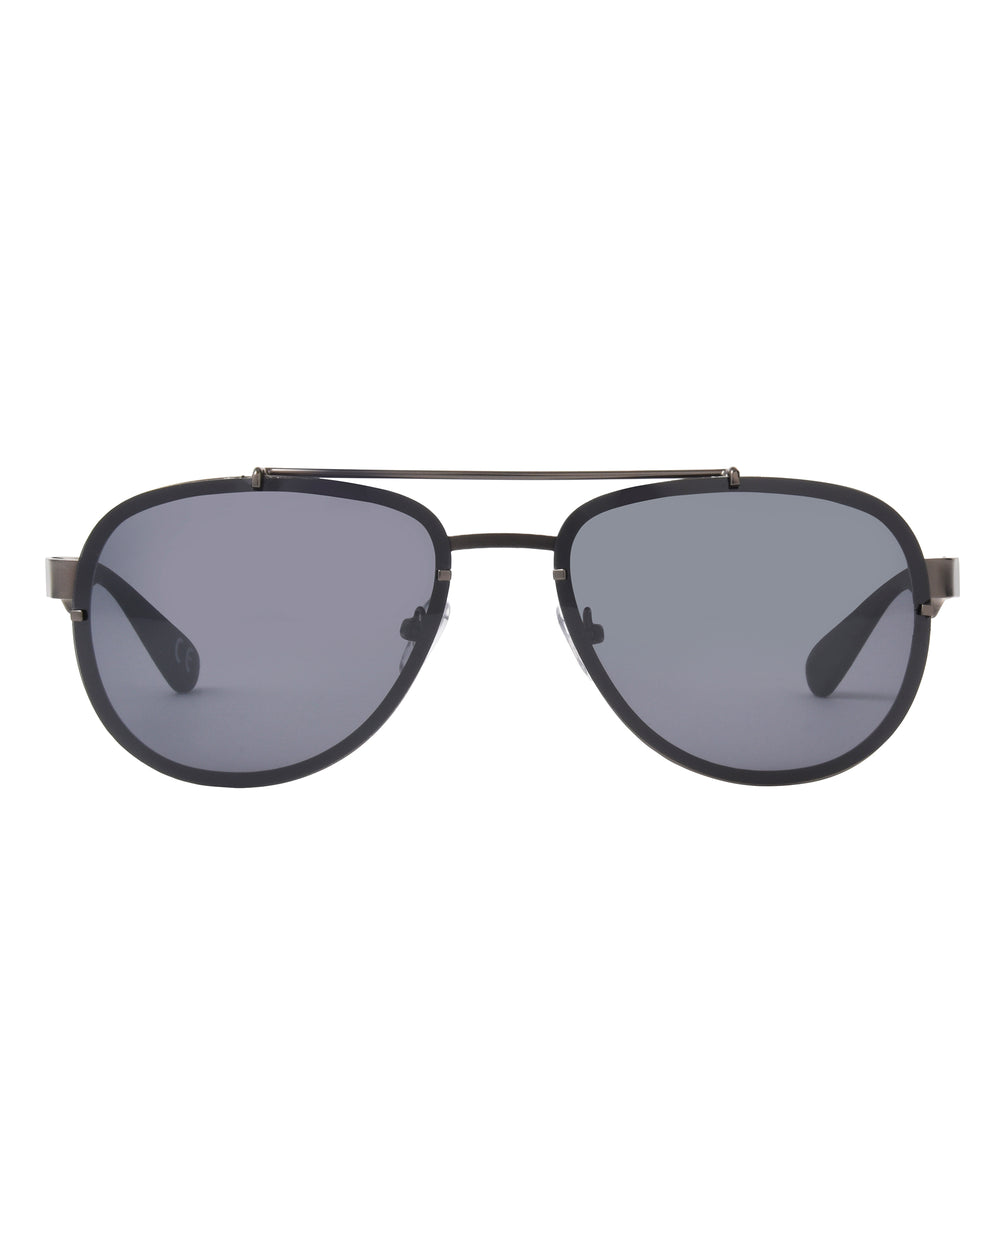 Men's BGM 2014 Polarized Core Sunglasses - Grey - Body Glove